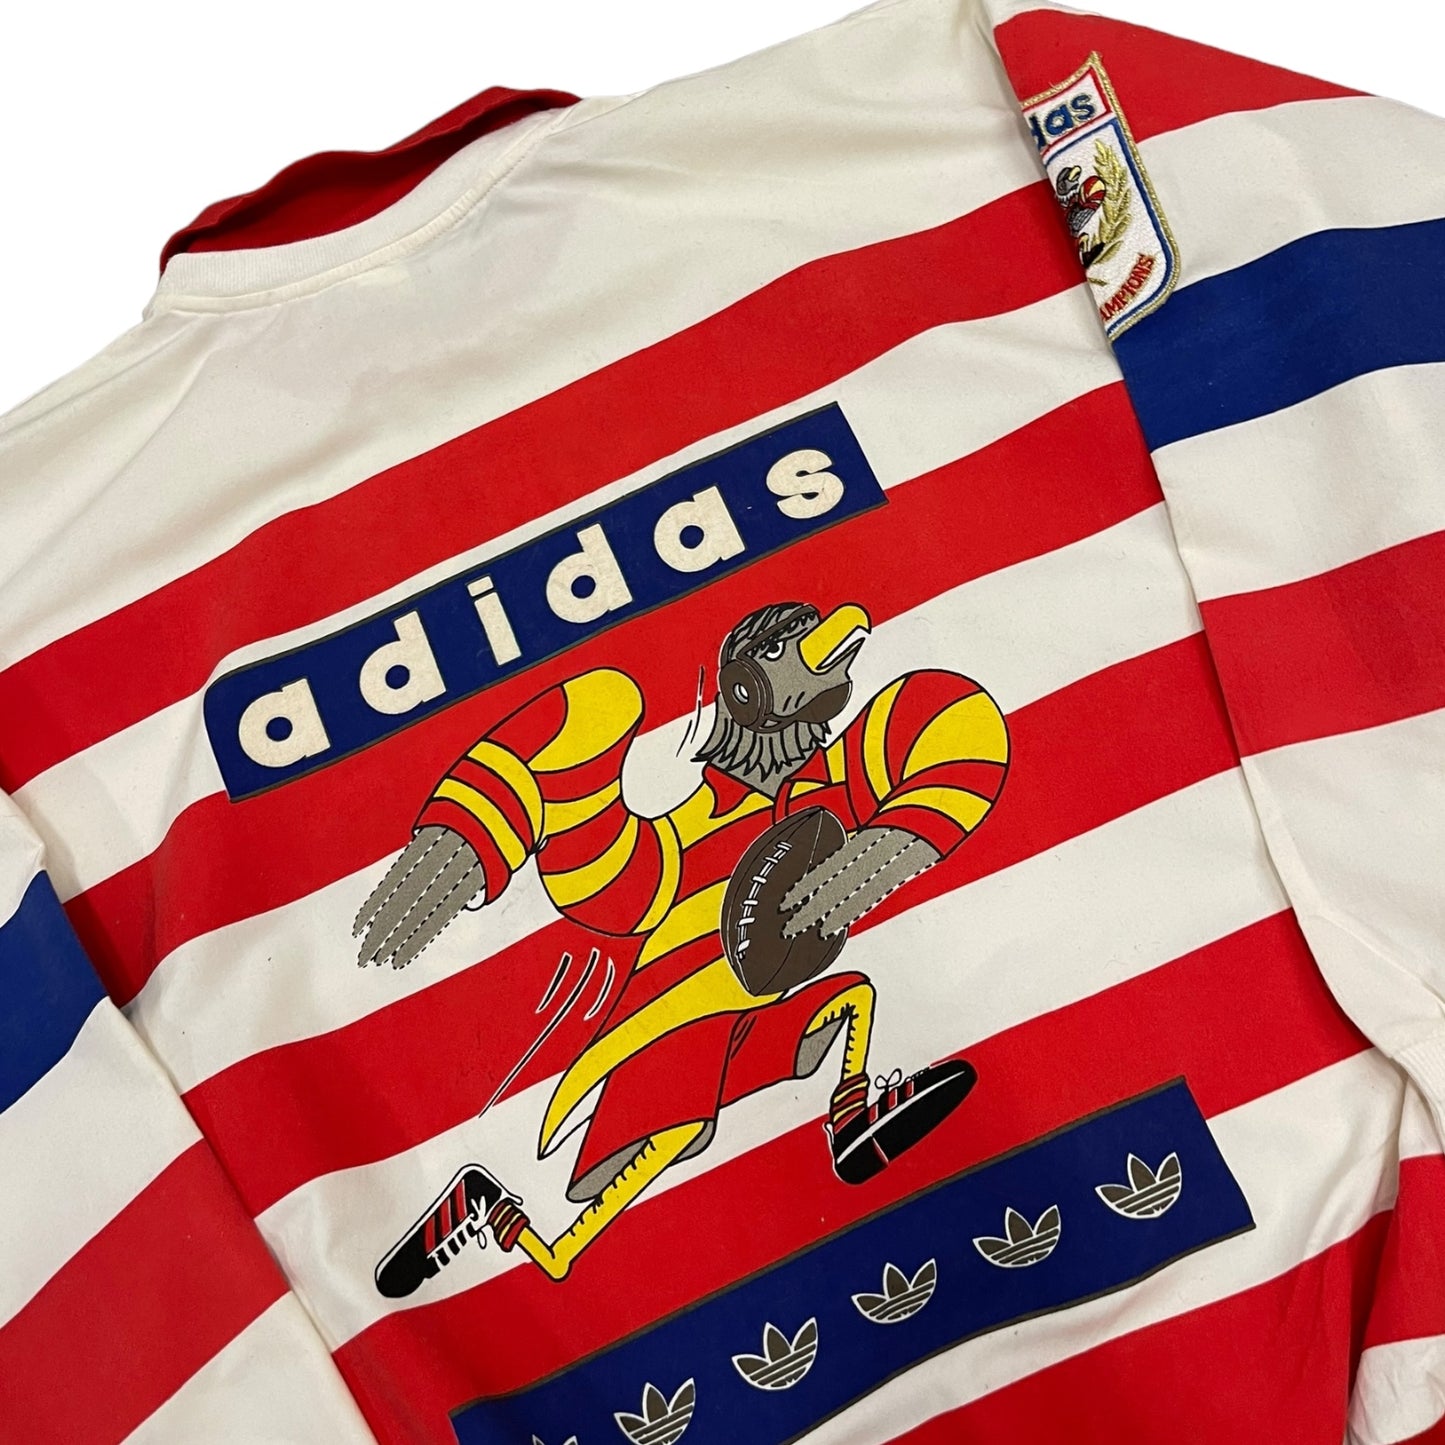 Adidas U.S.A Rugby Vintage Polo Shirt - Medium